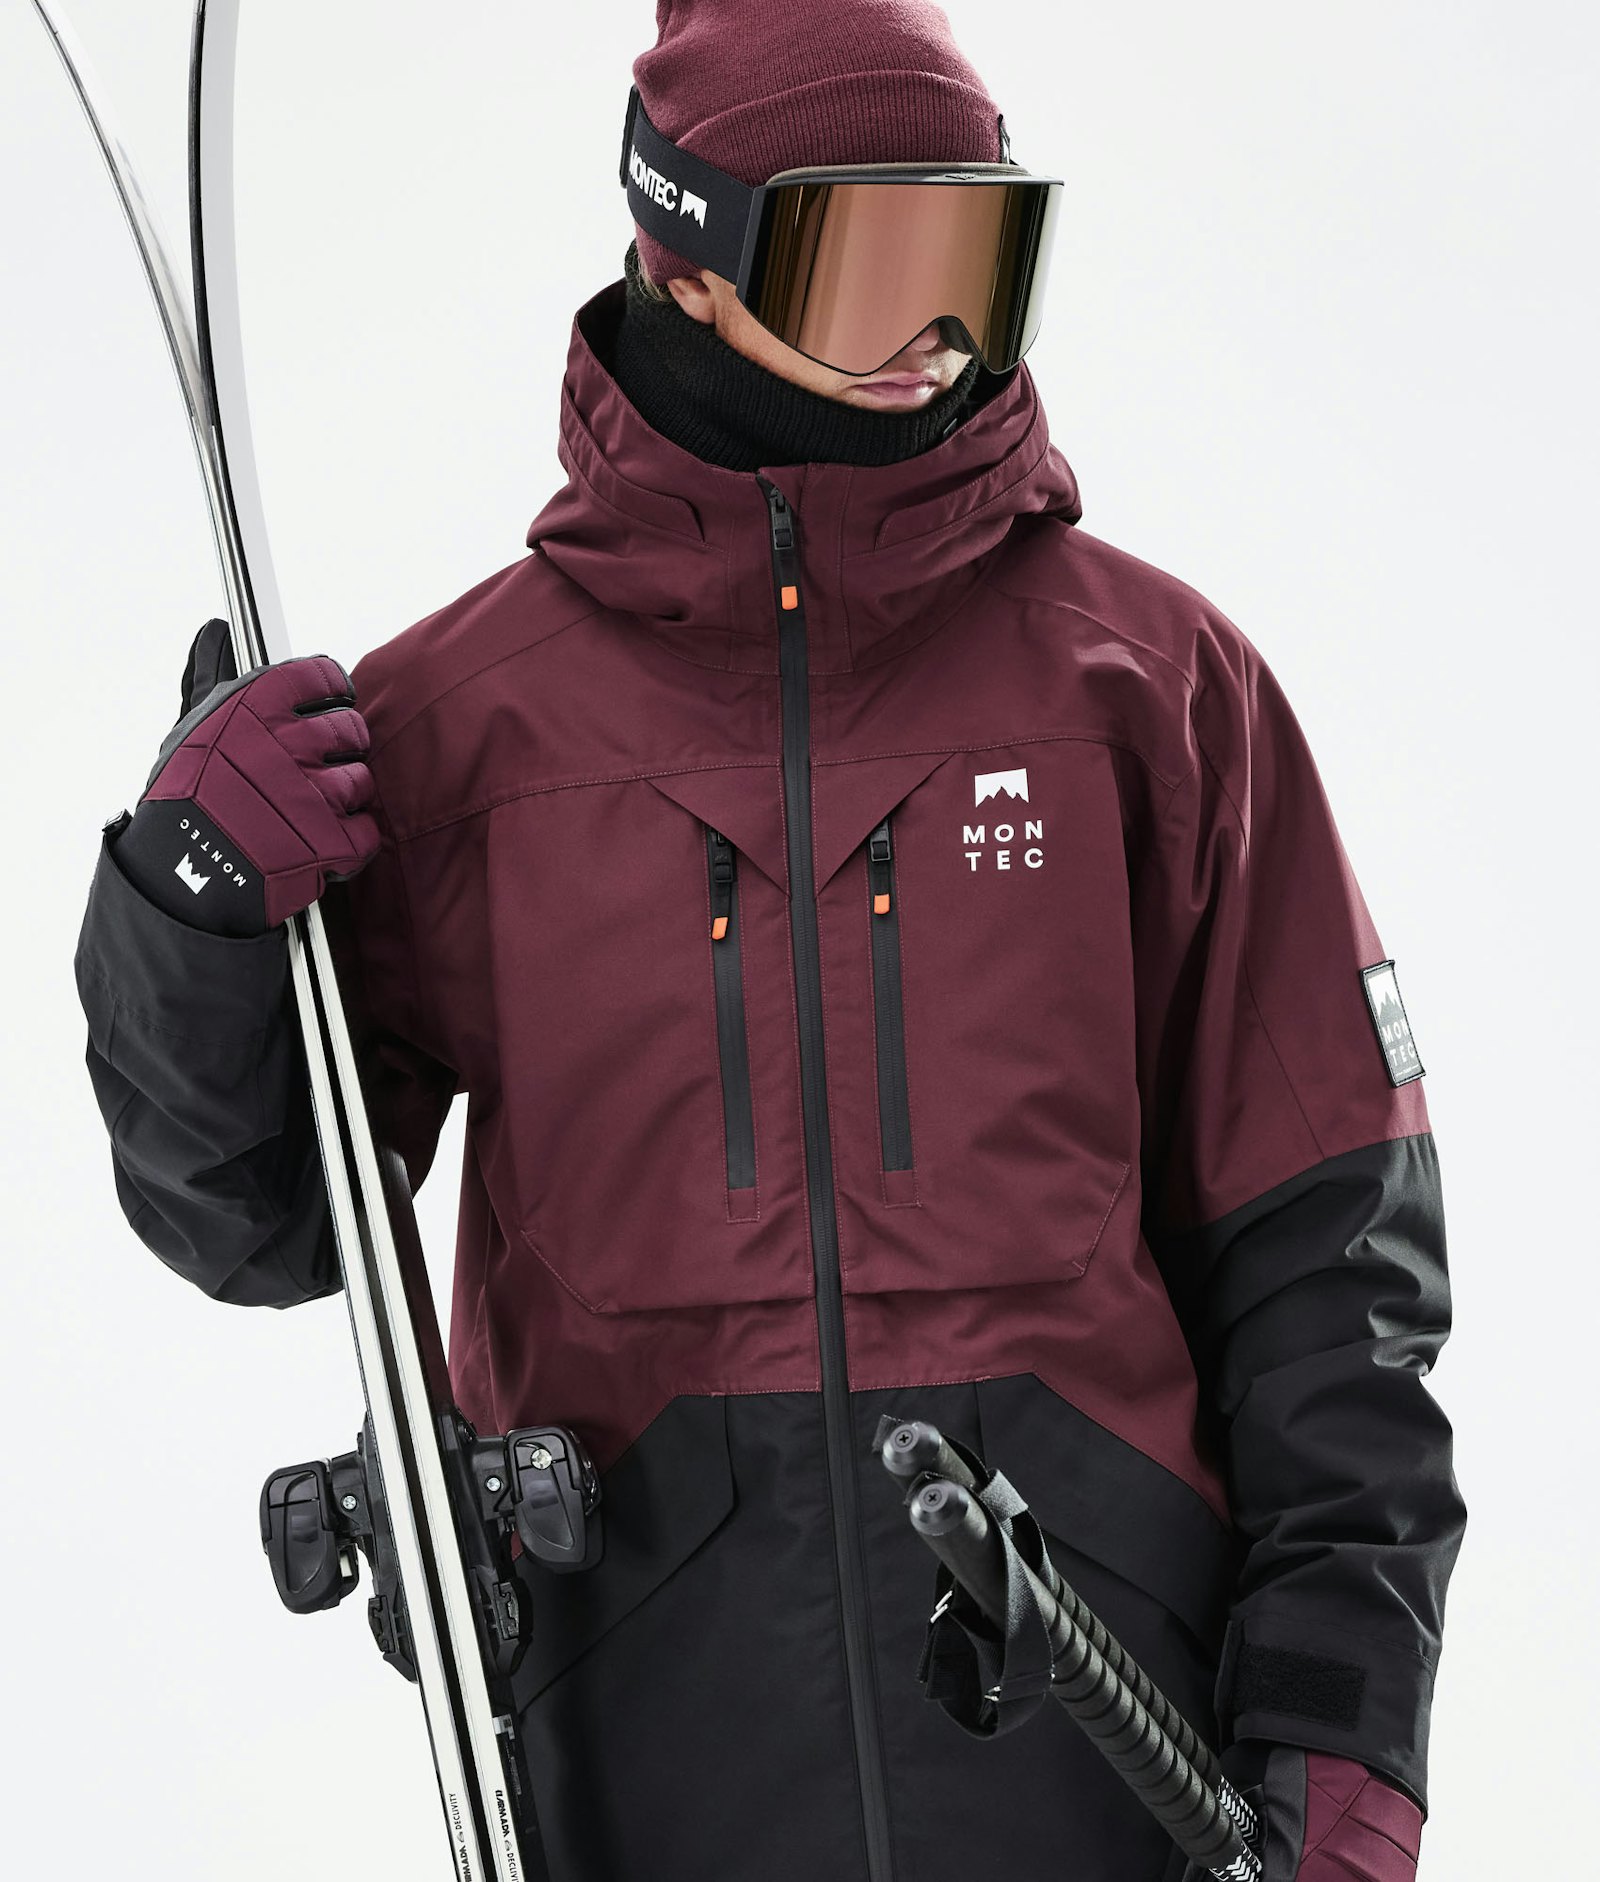 Moss 2021 Veste de Ski Homme Burgundy/Black